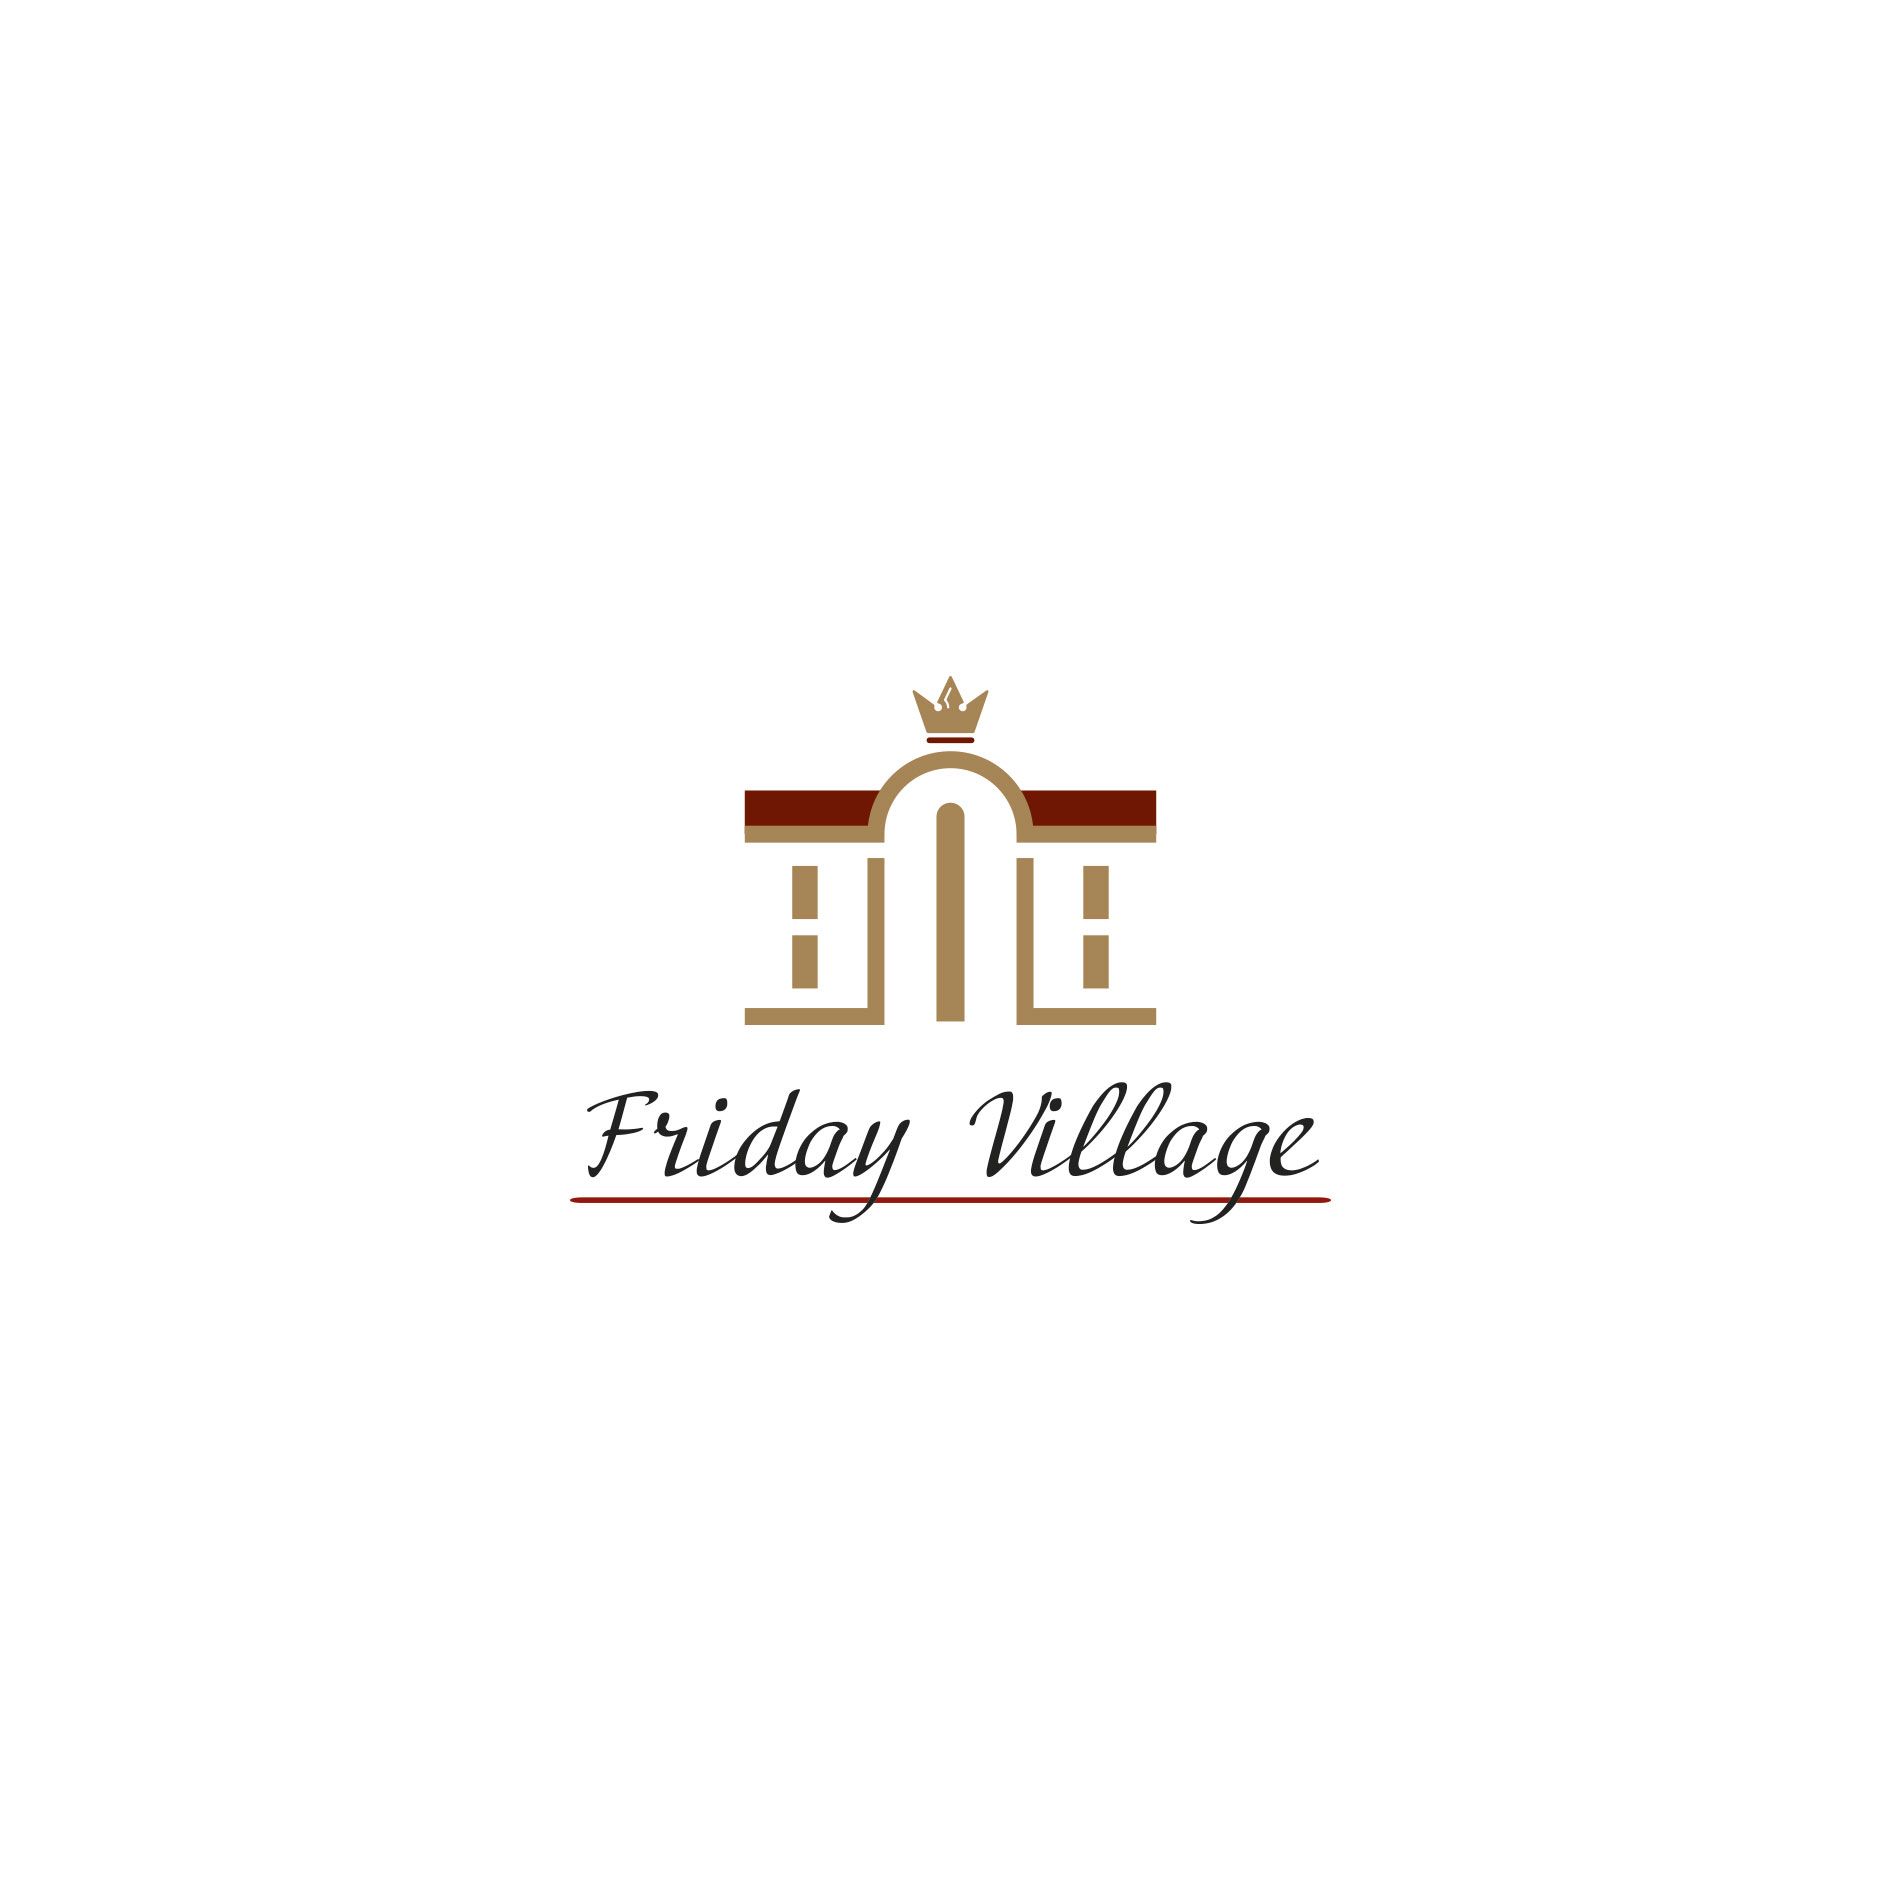 Лого и фирменный стиль для Friday Village (Фрайдей Вилледж) - дизайнер ivandesinger